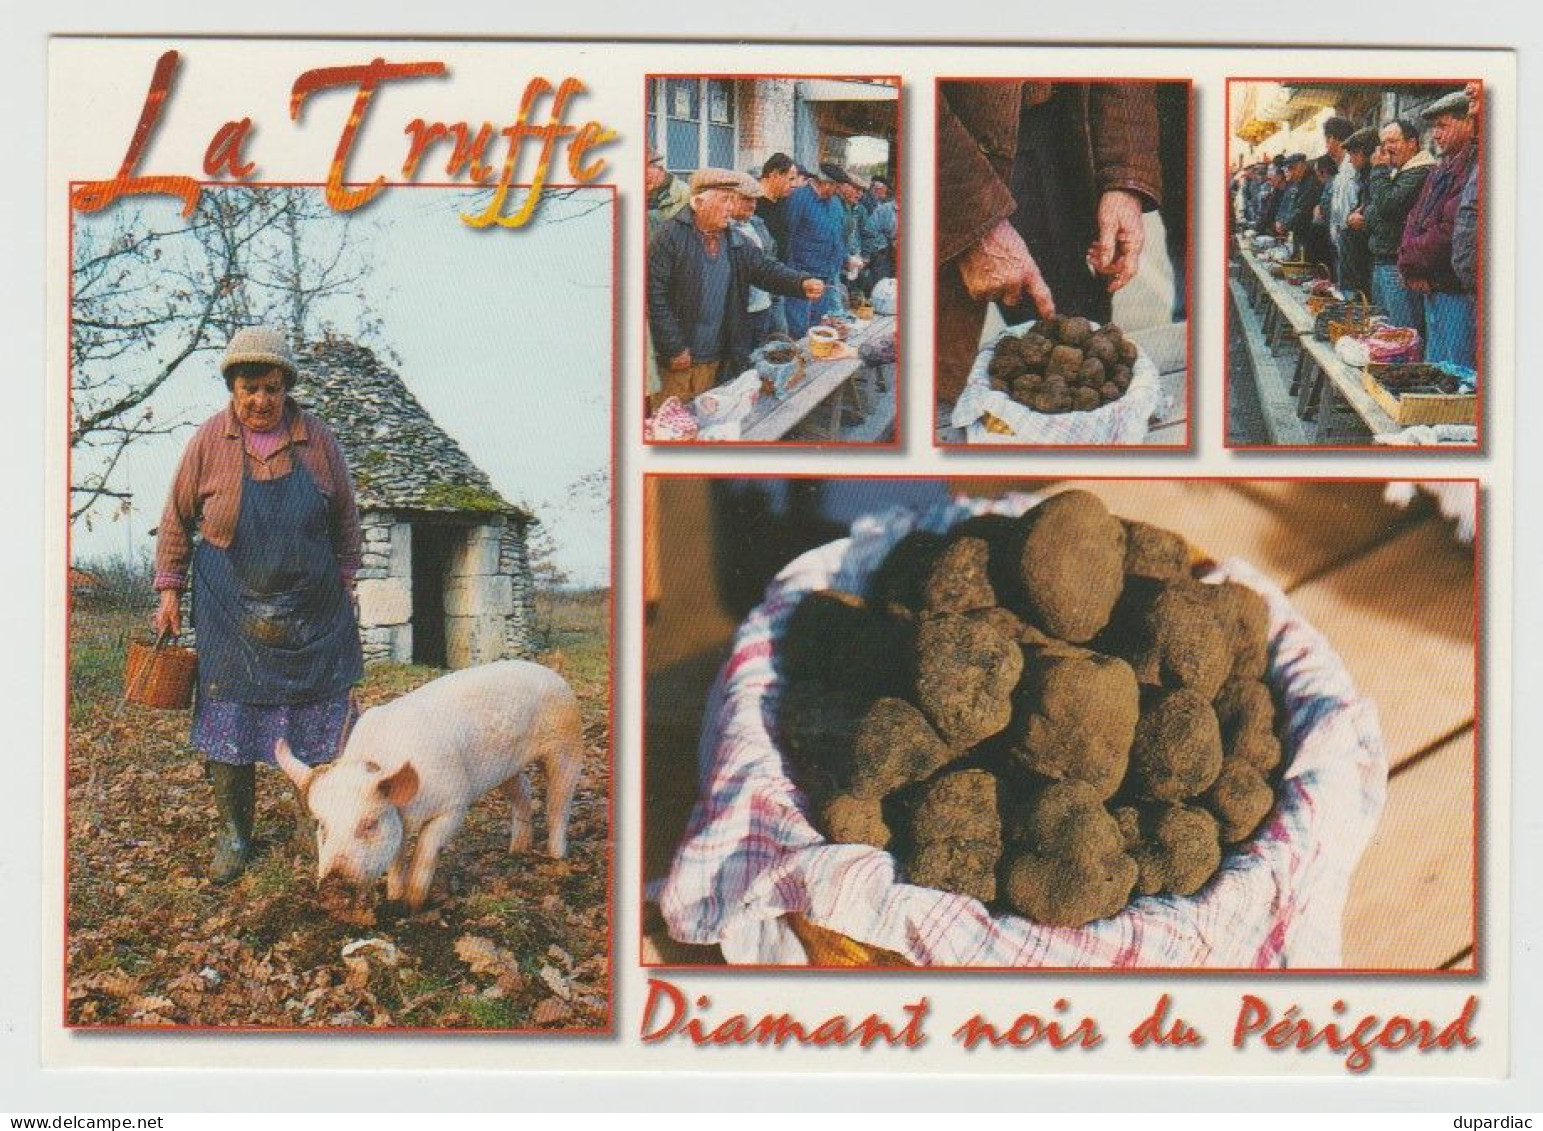 Recherche de la TRUFFE : lot de 12 cartes postales (cochons et champignons).